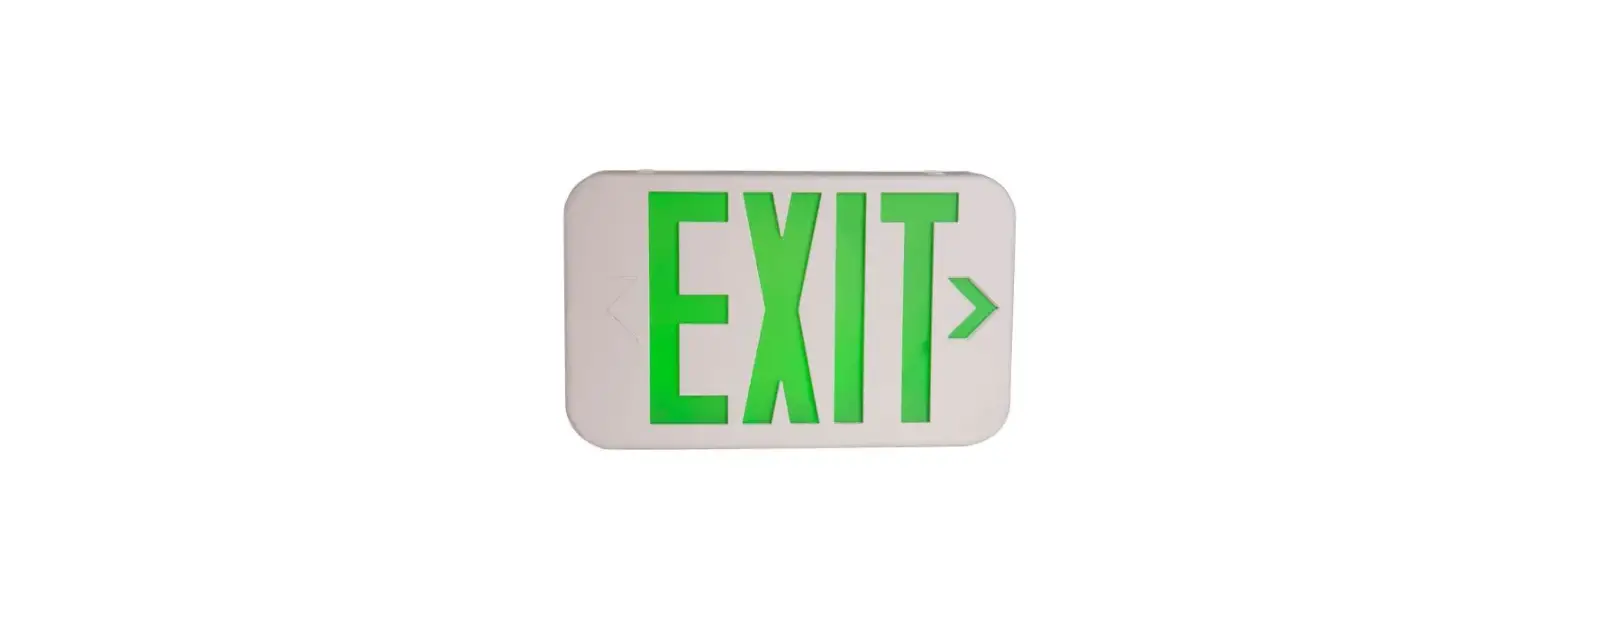 e-conolight KXTE Die-Cast LED Exit Sign